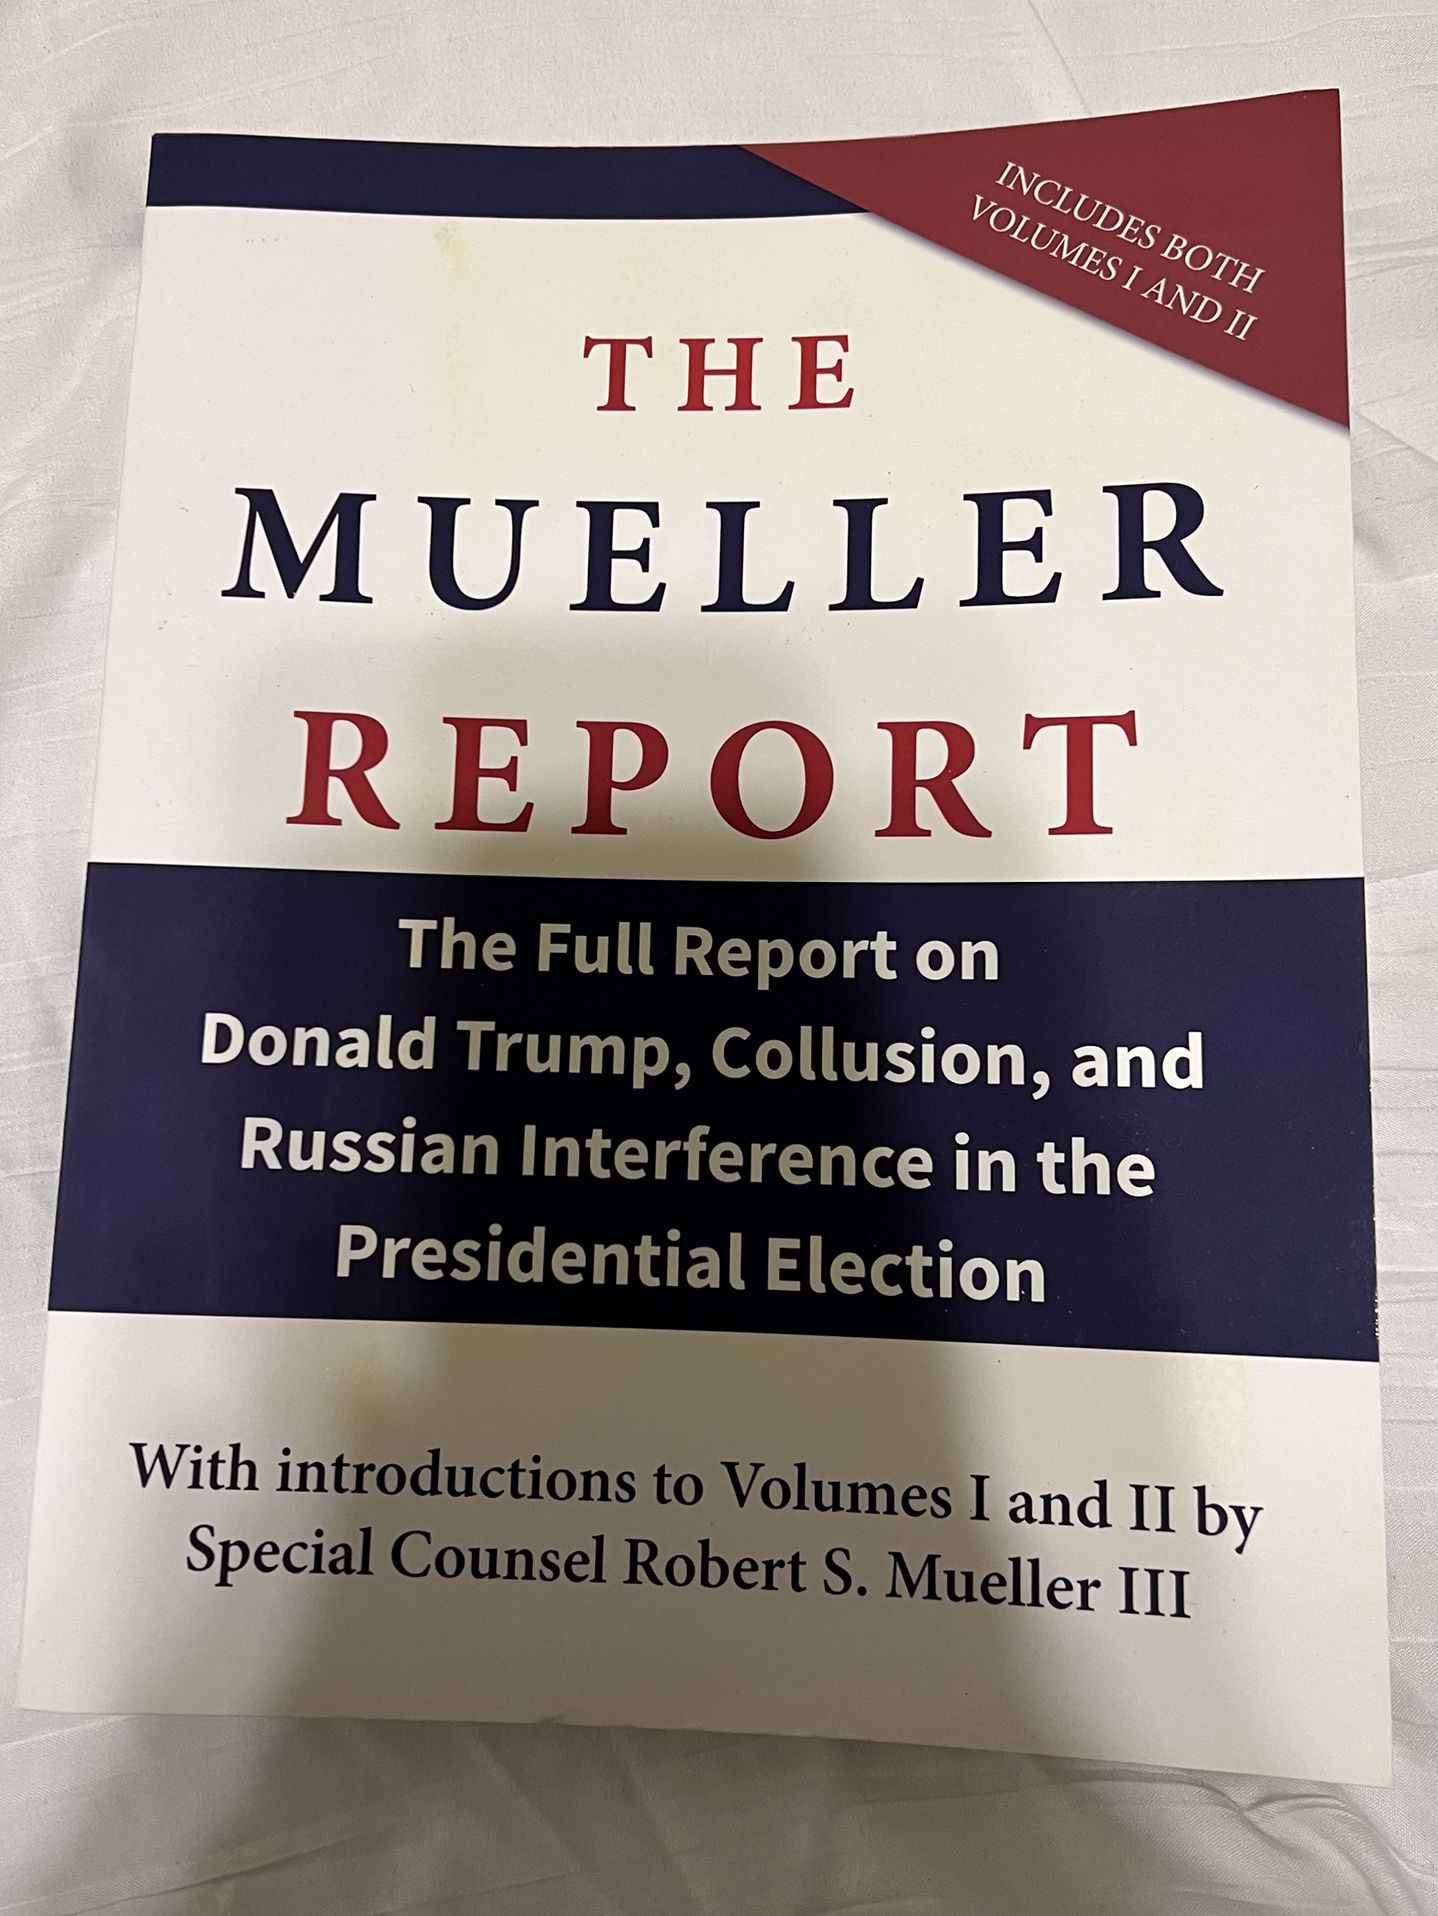 The Mueller Report by Robert Mueller